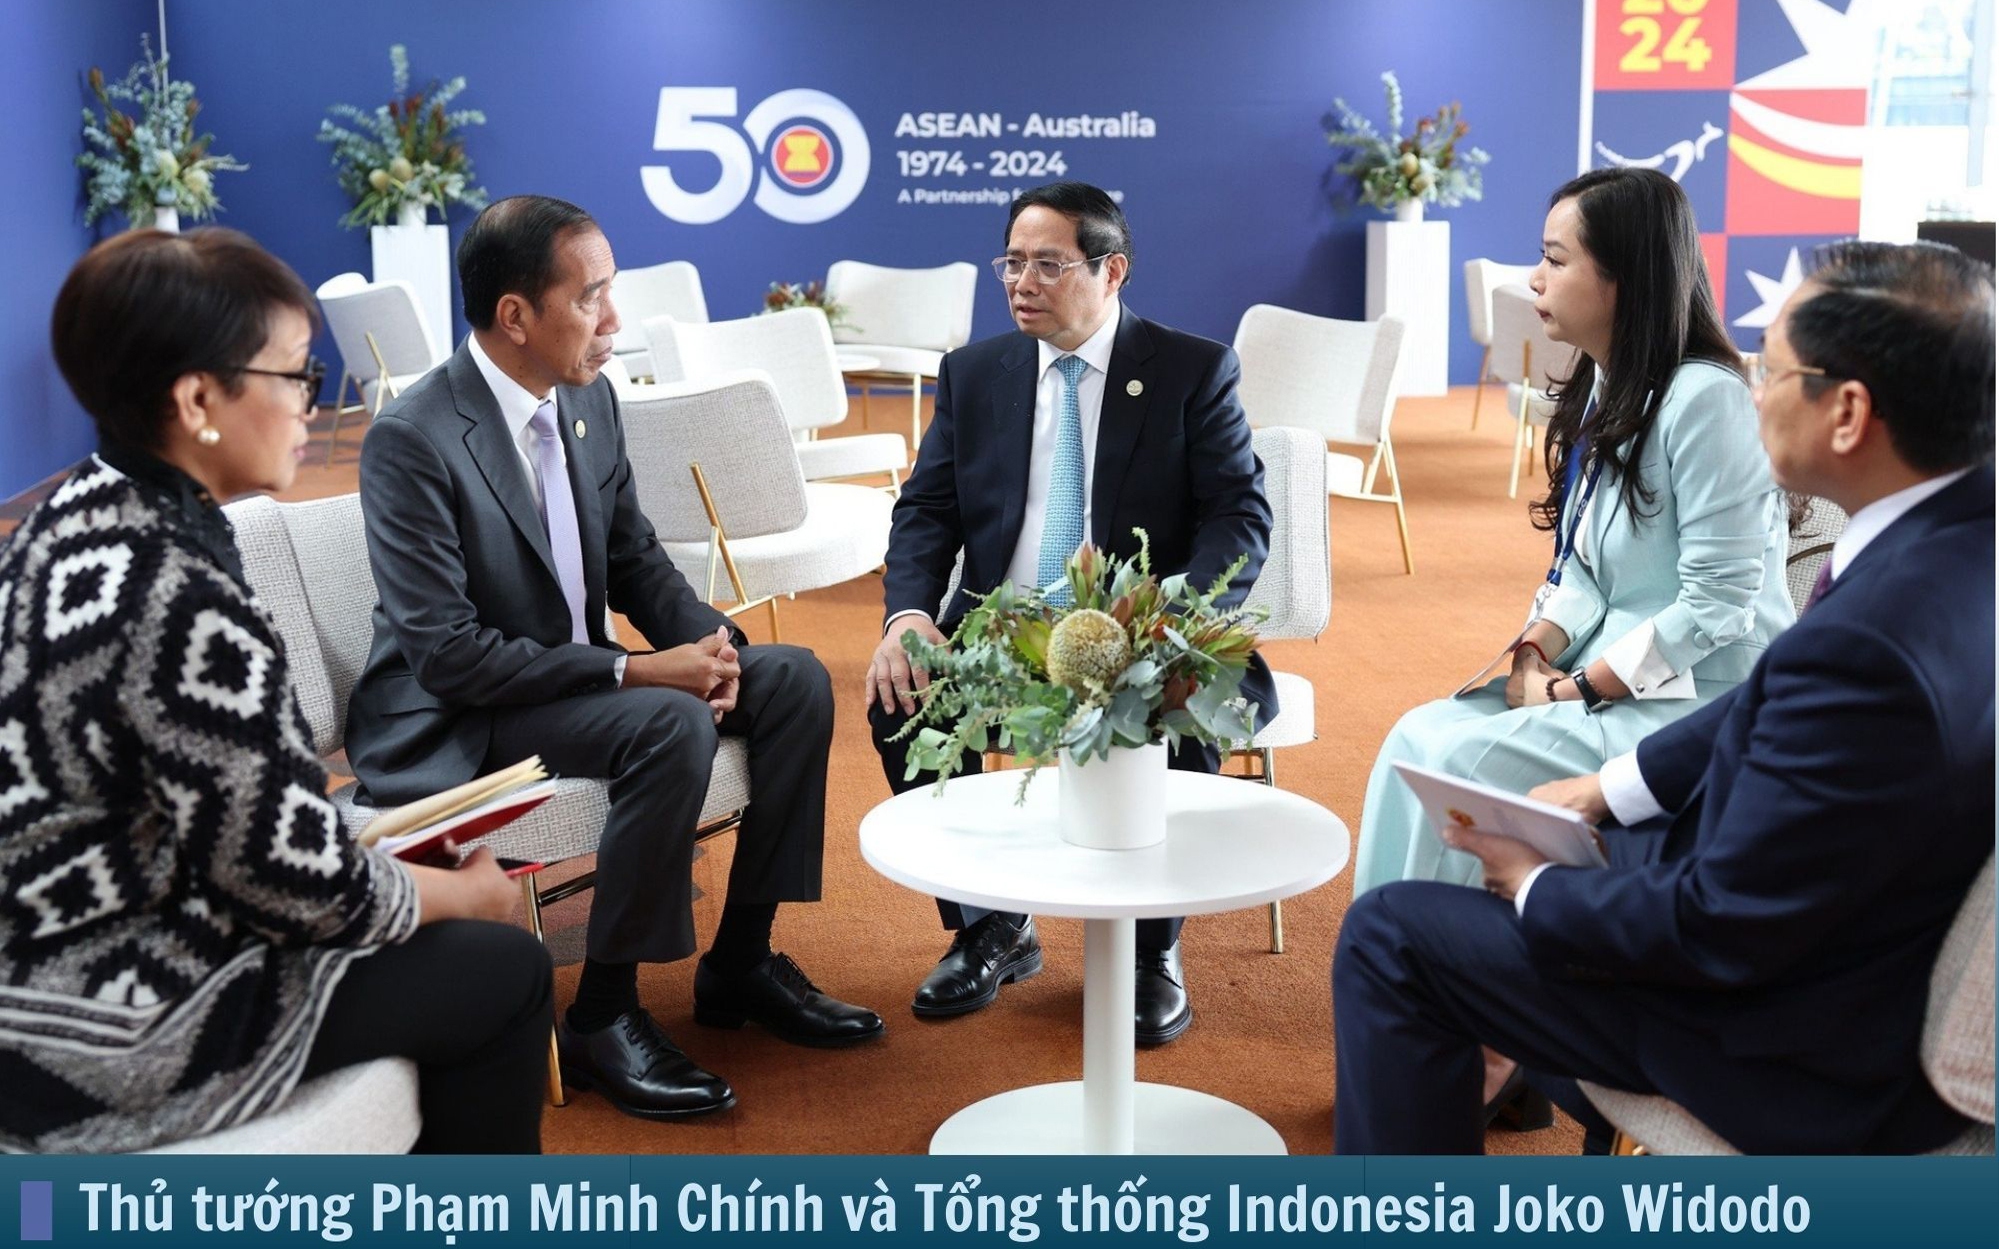 Hình ảnh báo chí 24h: Thủ tướng Phạm Minh Chính gặp tất cả lãnh đạo dự hội nghị ASEAN - Australia